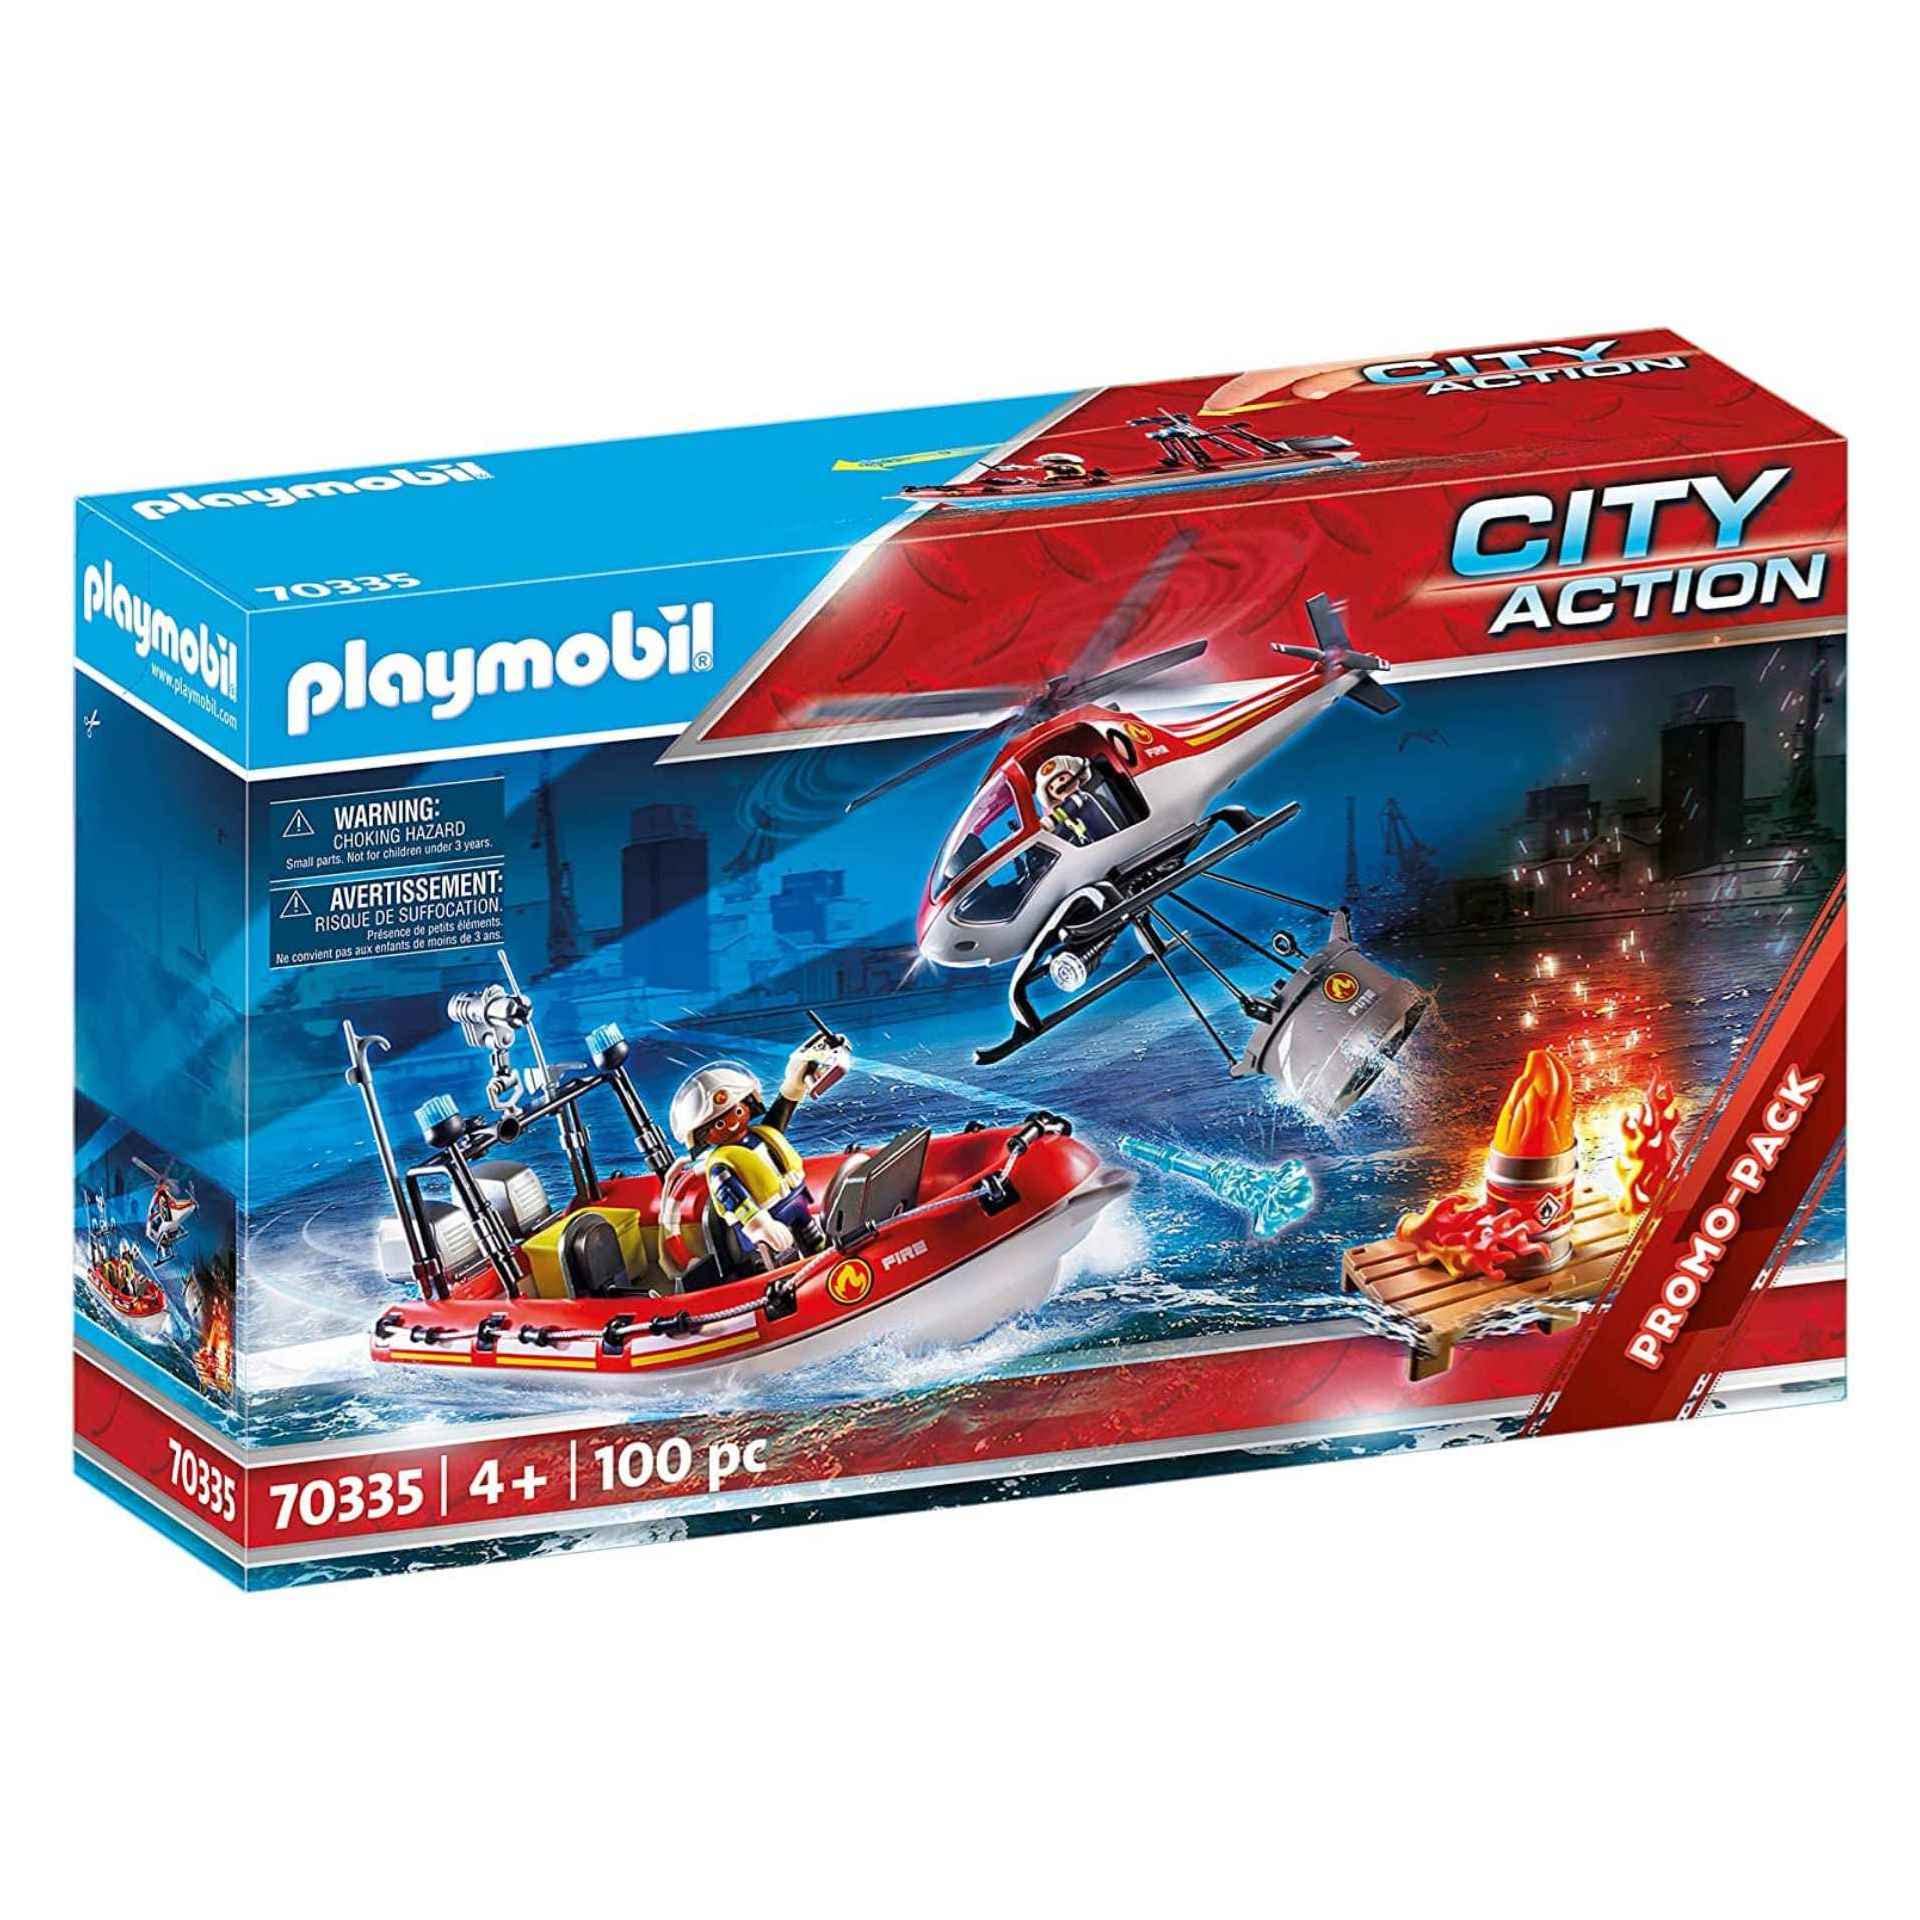 PLAYMOBIL City Action 70335 - Feuerwehreinsatz mit Heli und Boot, ab 4 Jahren